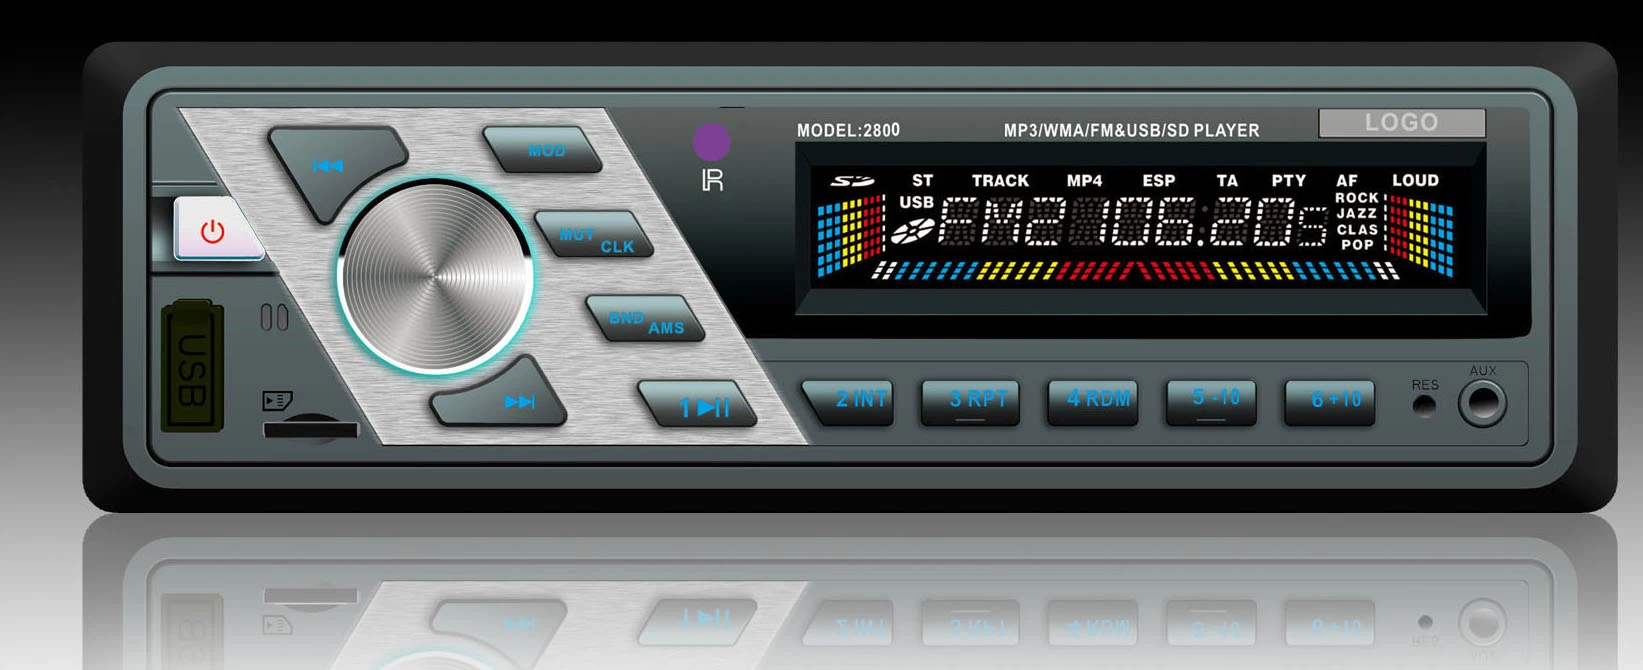 1010 Hot Sale Panel Single DIN Car FM MP3 Radio